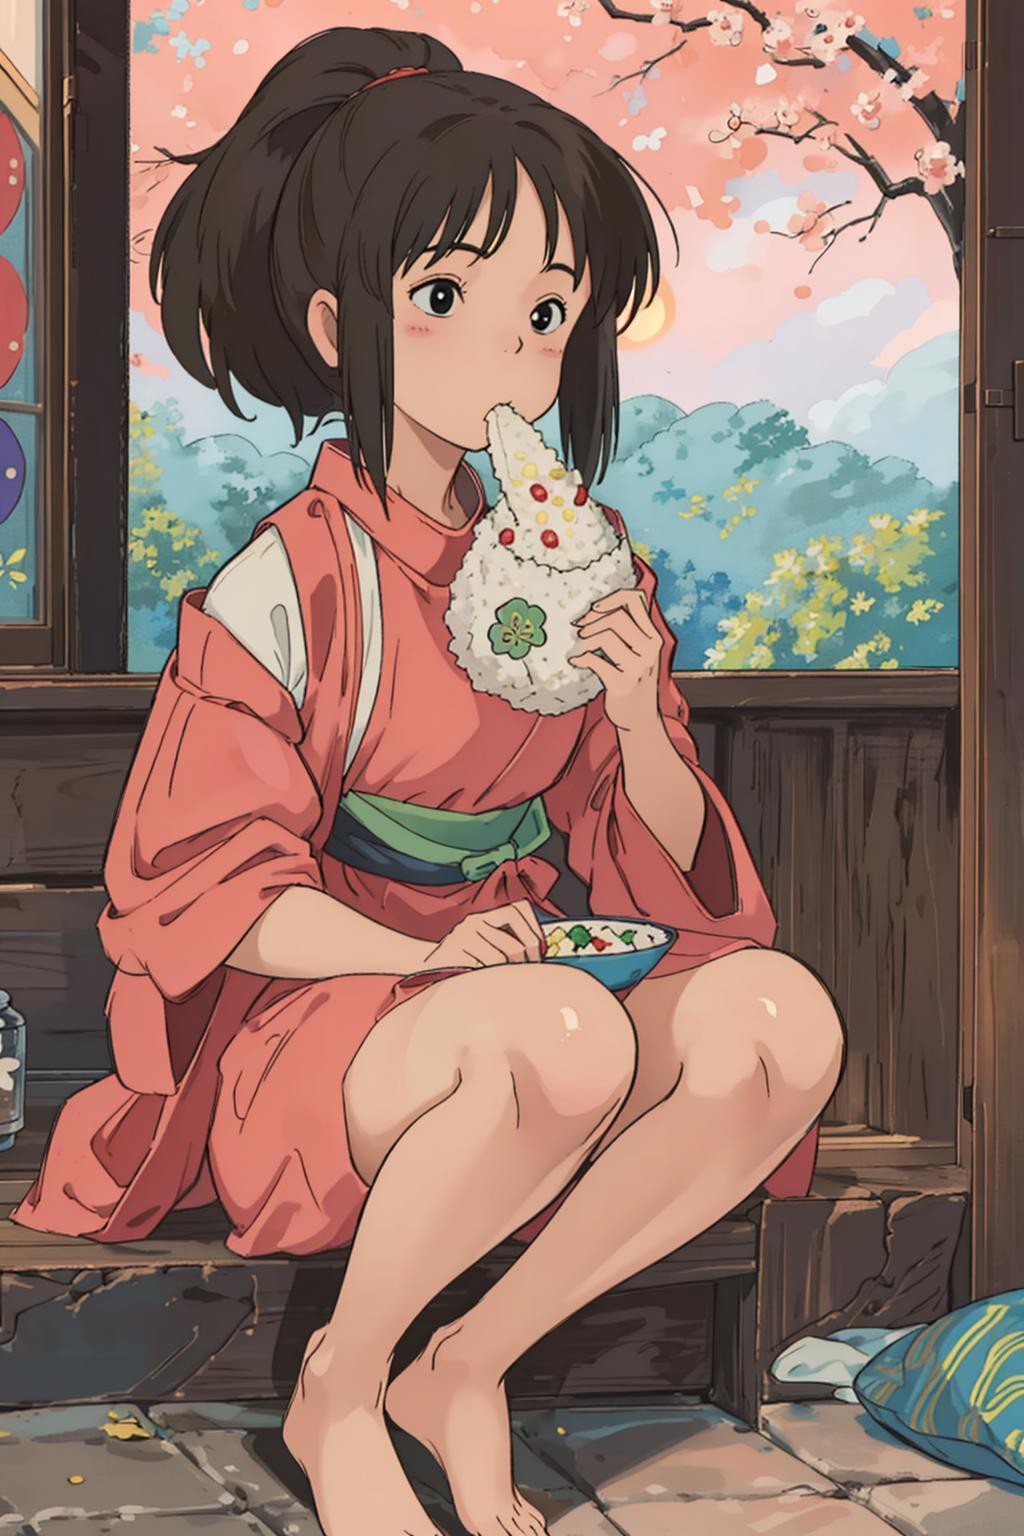 Ghibli - Spirited Away - Chihiro Ogino image by chrgg